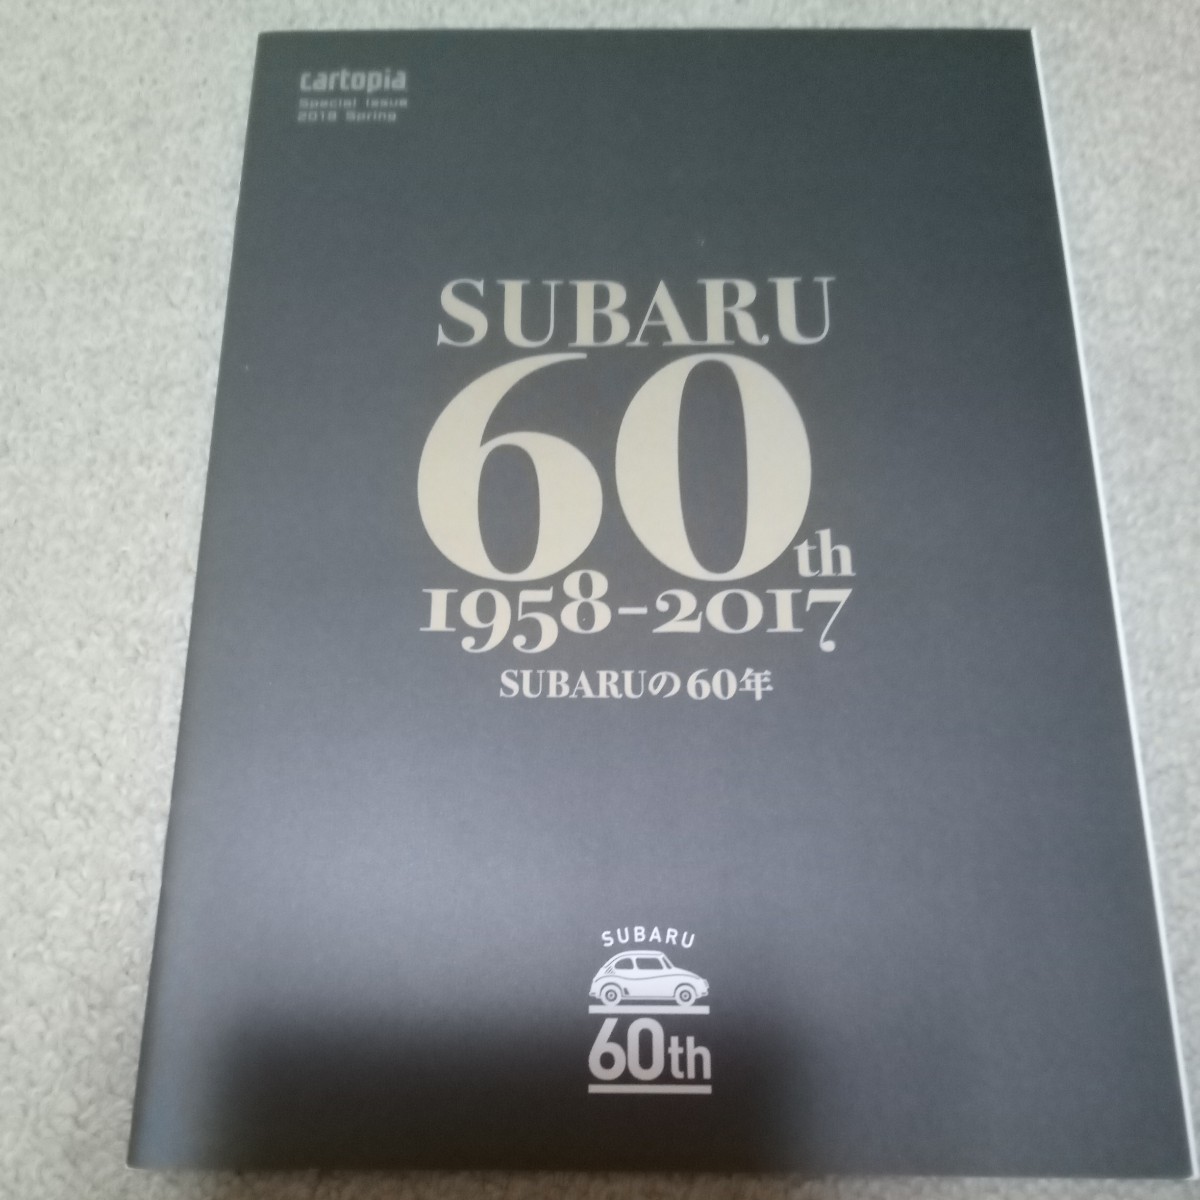  Subaru DRIVE LOG новый товар не использовался нераспечатанный Subaru оригинал товар дополнение Cart Piaa специальный 2018SUBARU 60th брошюра 22p